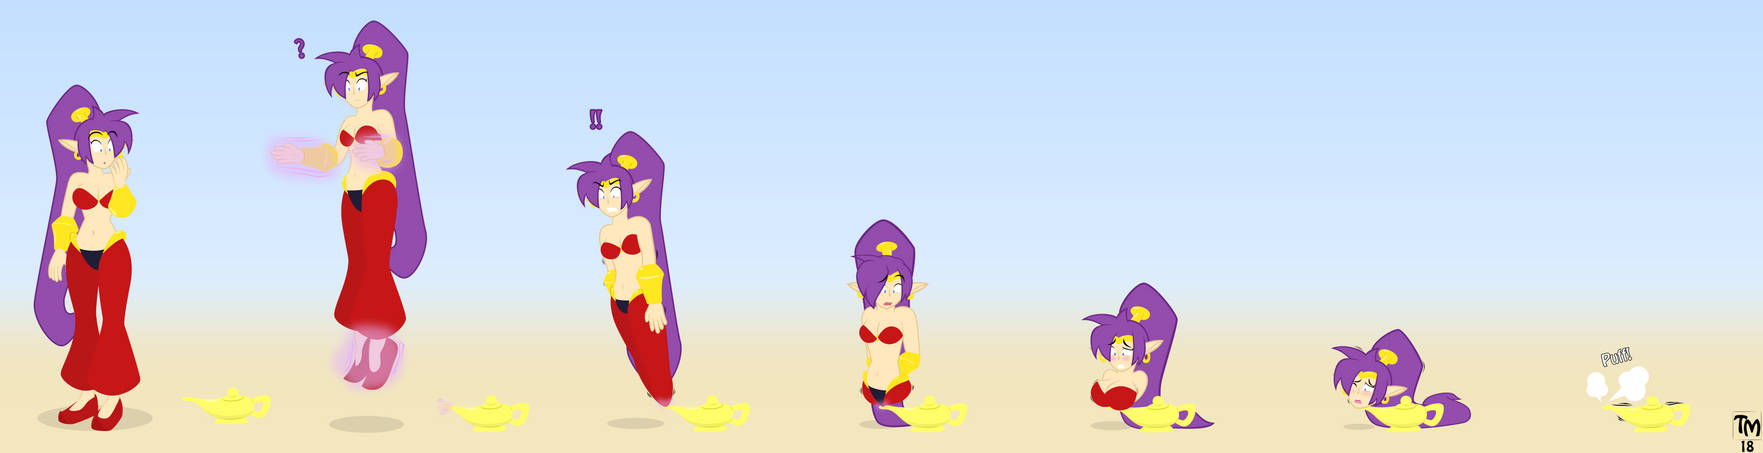 AT - Shantae Lamp Sequence